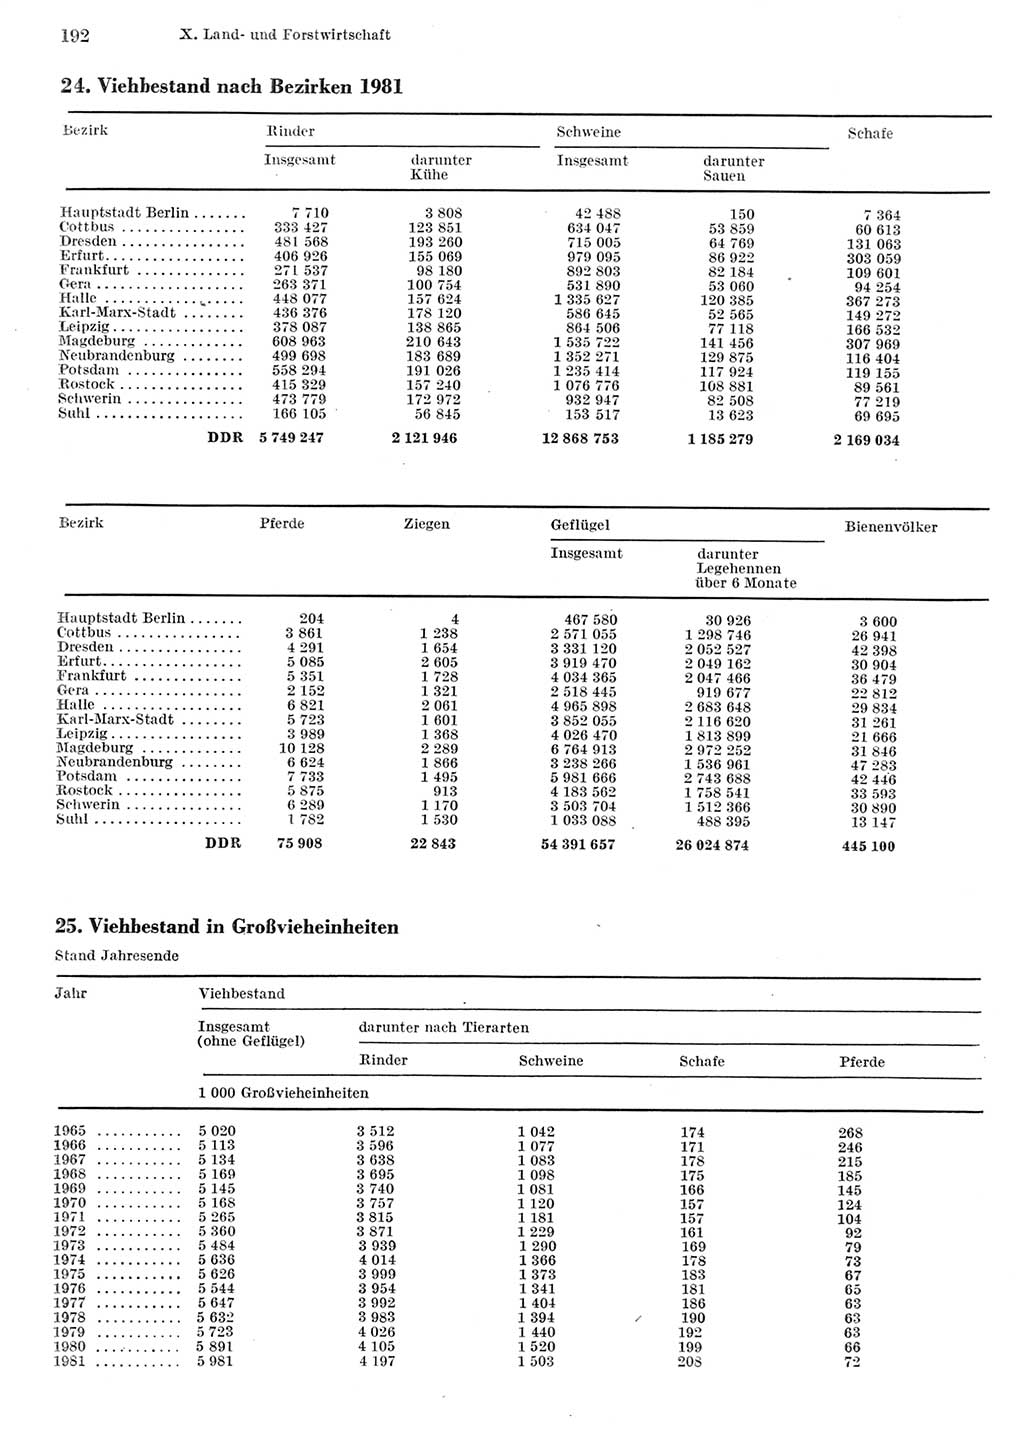 Statistisches Jahrbuch der Deutschen Demokratischen Republik (DDR) 1982, Seite 192 (Stat. Jb. DDR 1982, S. 192)